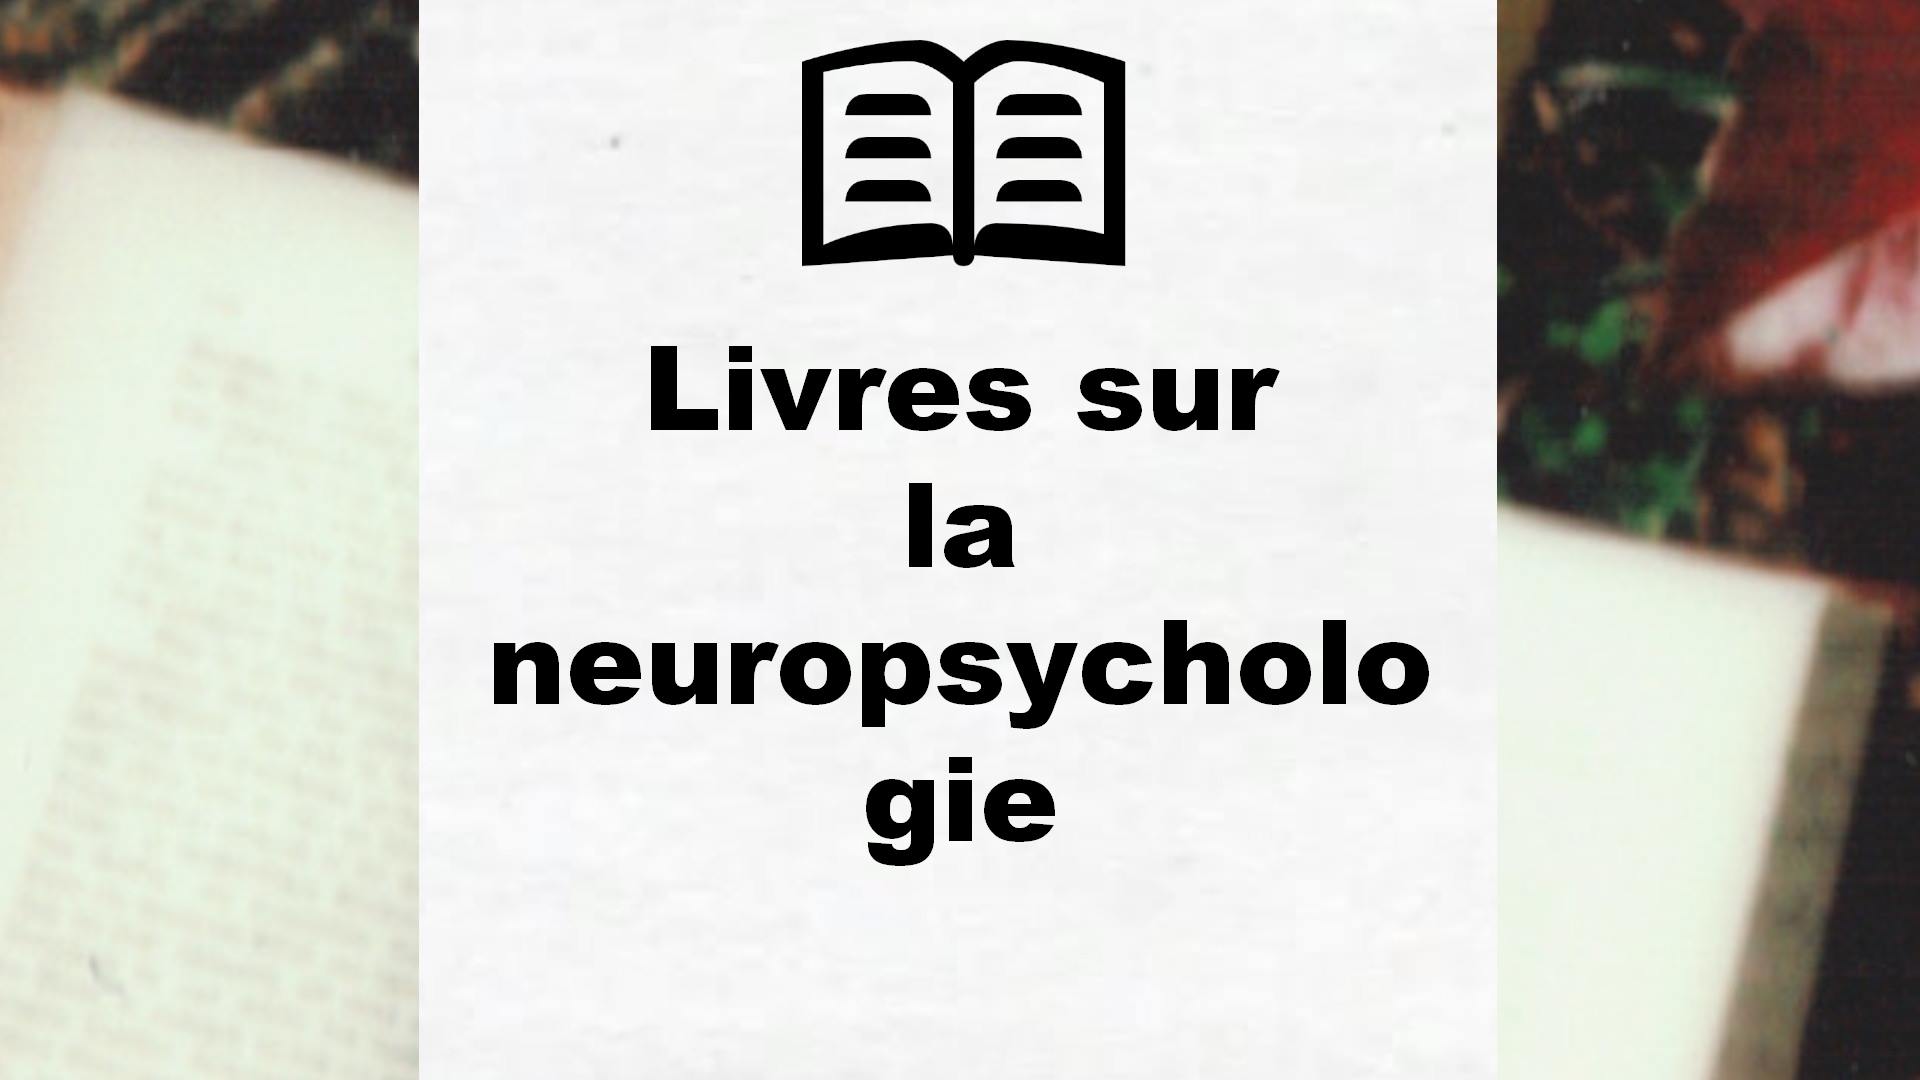 Livres sur la neuropsychologie